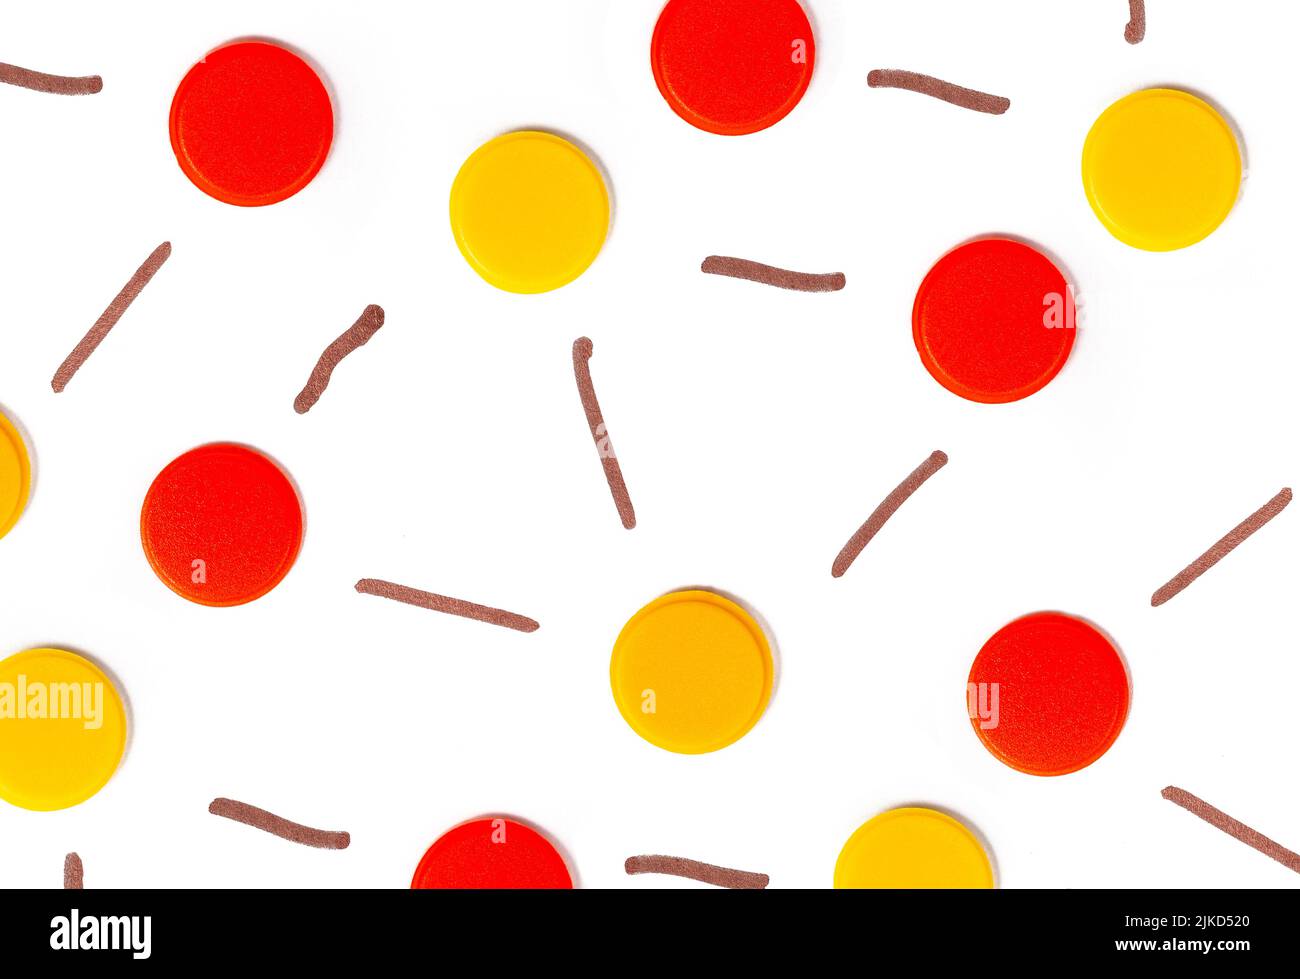 Grupo de nodos de punto interconectados amarillo rojo, conjunto abstracto de objetos, conjunto de conexiones de red individuales, cuadrícula, puntos finales conectados, nadie, vista superior Foto de stock